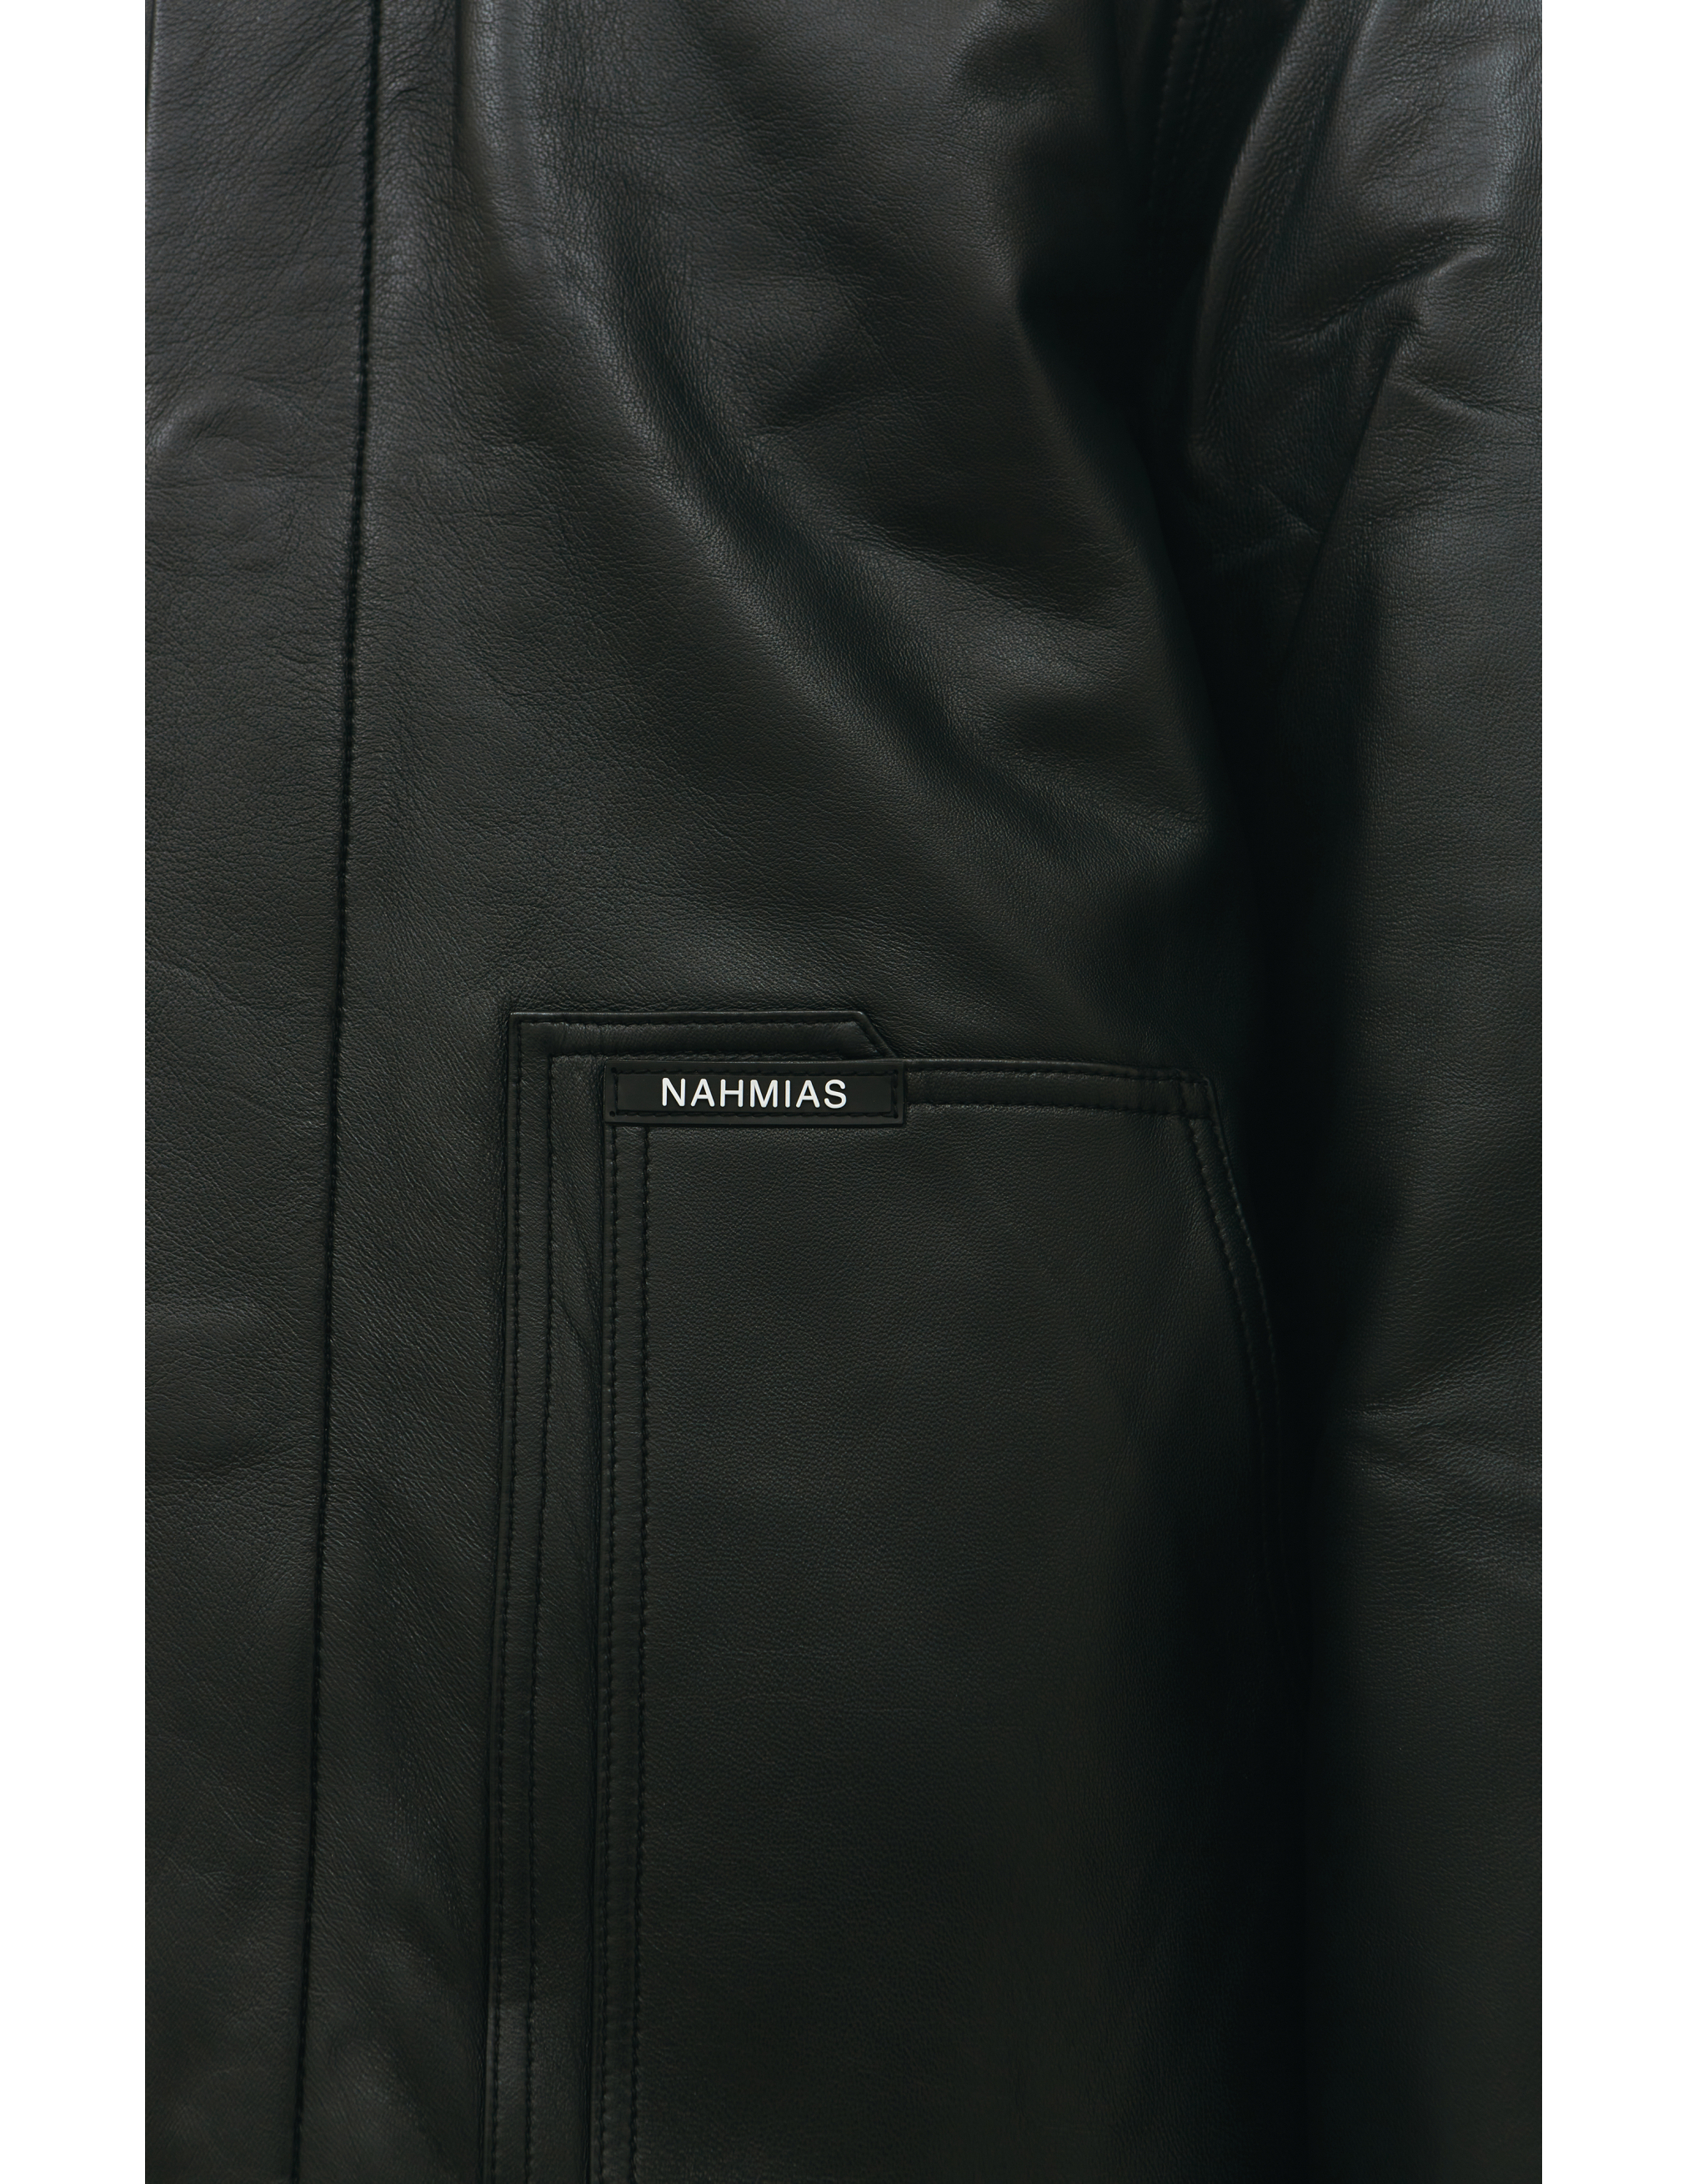 Кожаная куртка с меховым воротником Nahmias AW22-2-7017-F0046-BLACK, размер XL;L - фото 6